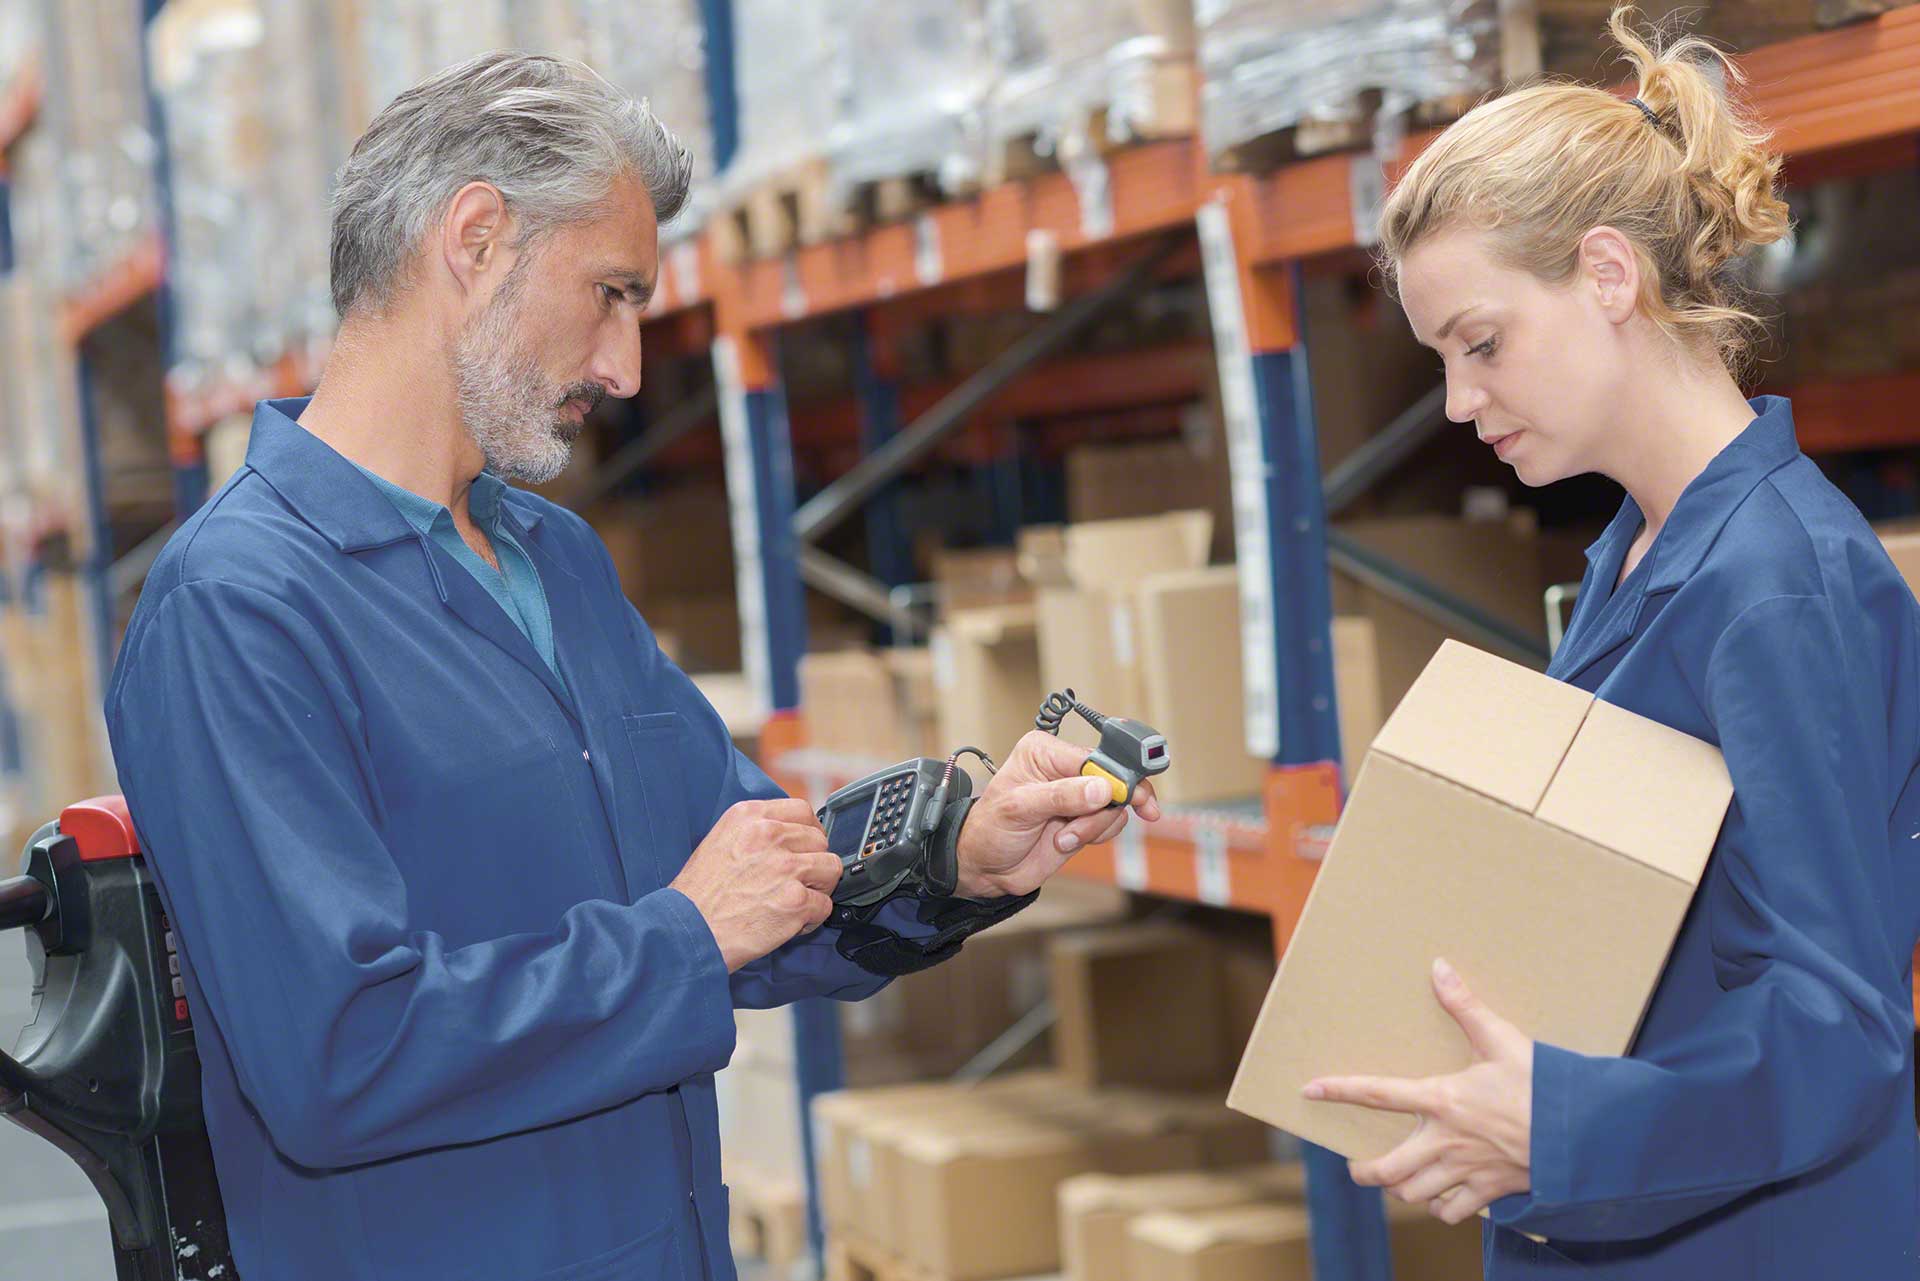 非盟gmented reality and wearables facilitate the work of warehouse operators